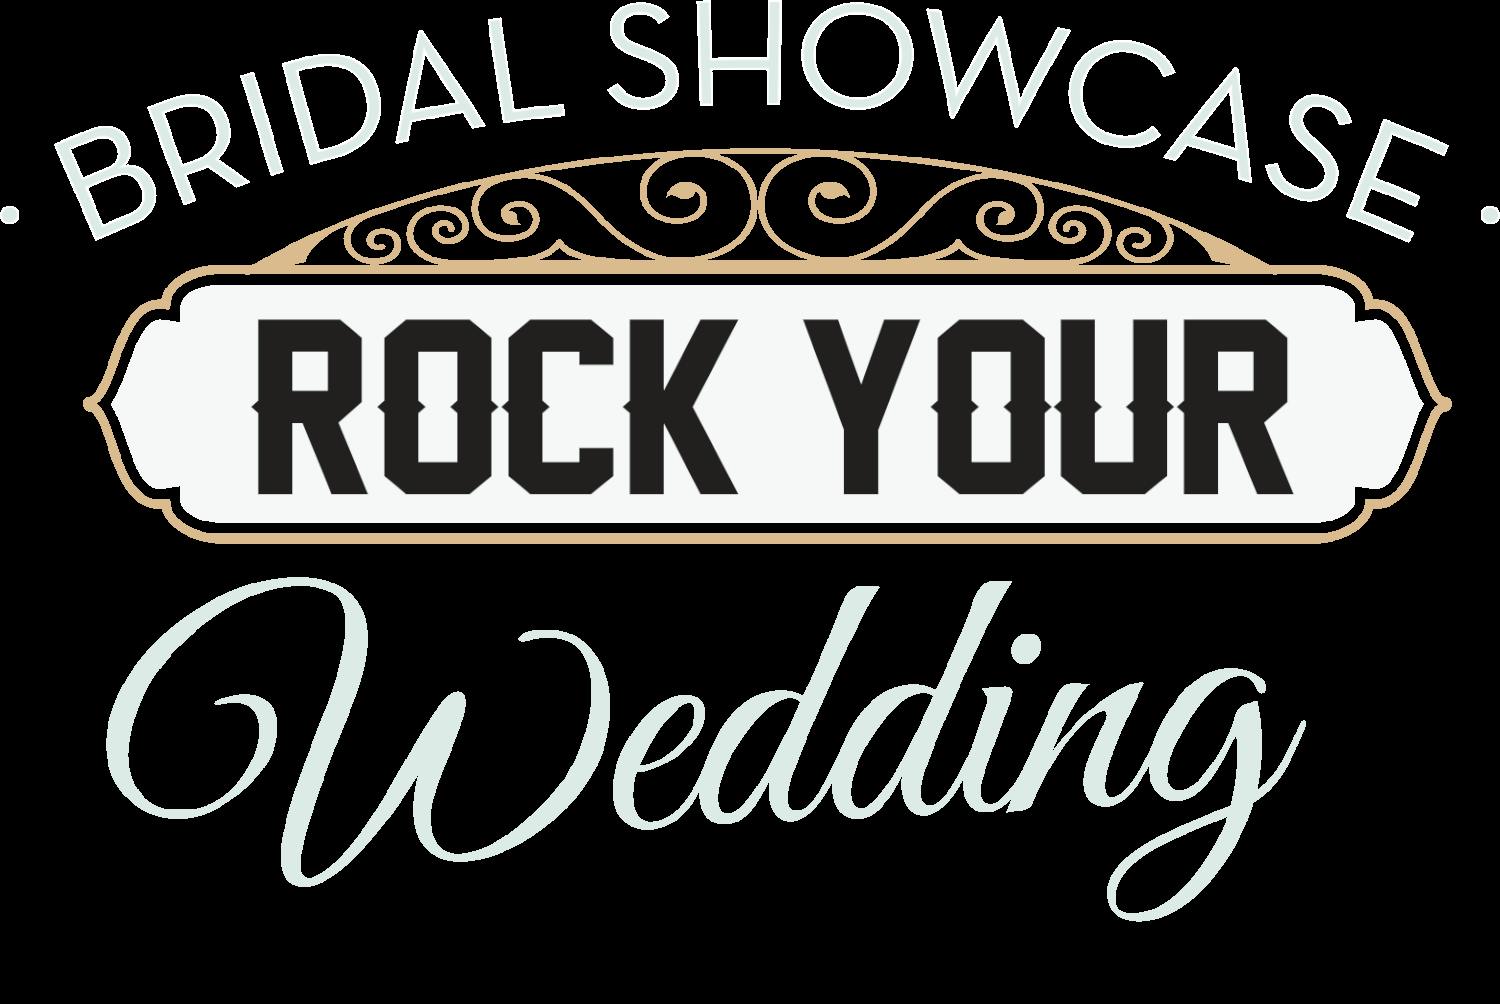 Rock Your Wedding -Bridal Showcase